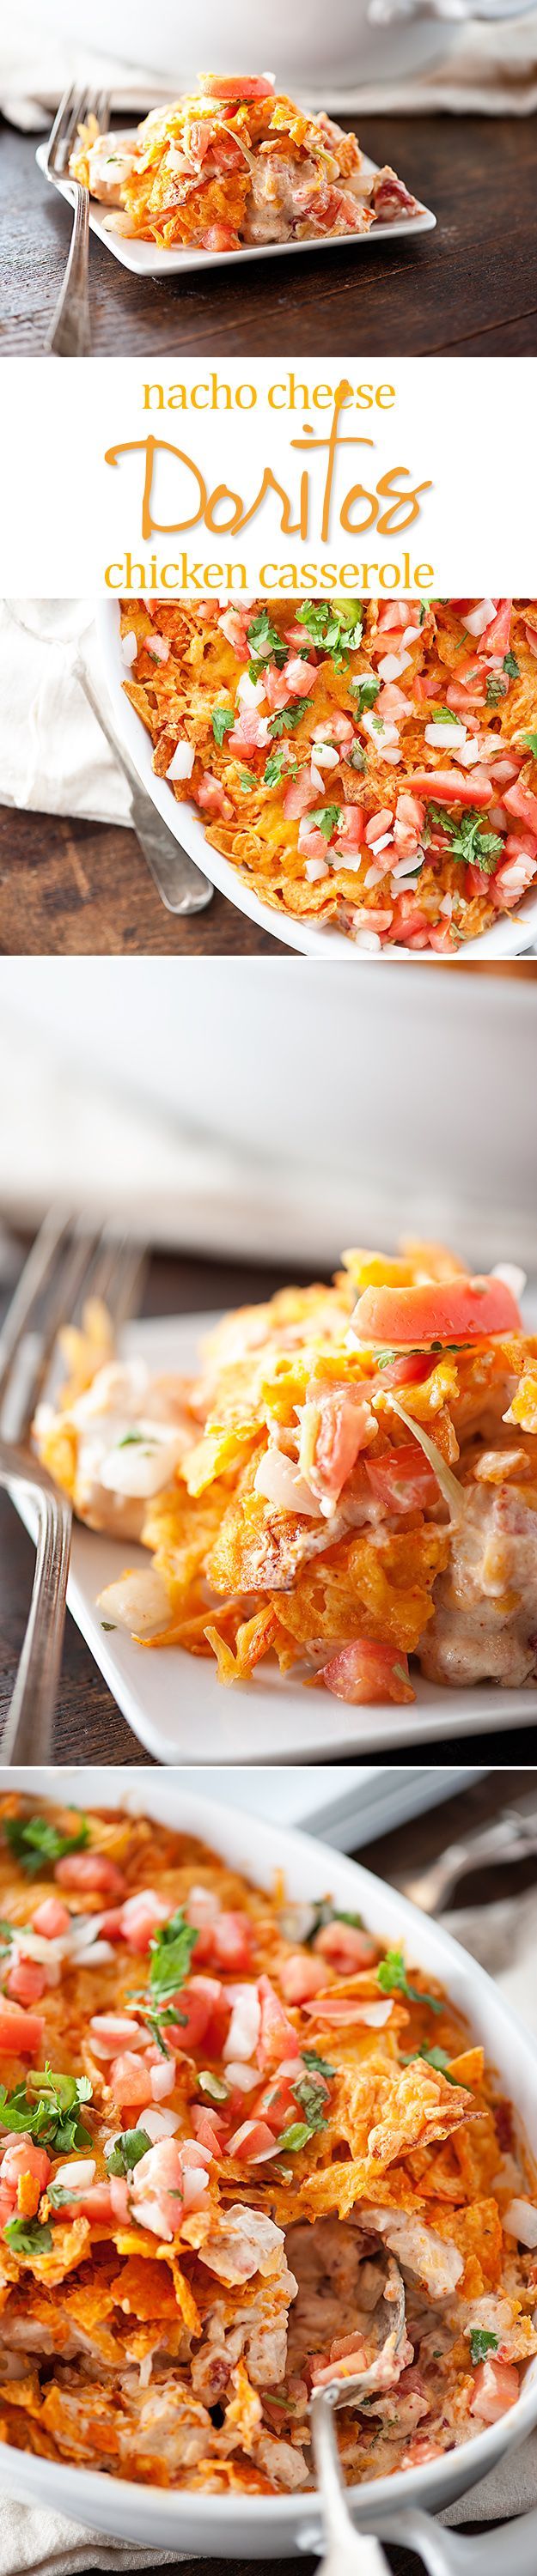 Doritos Chicken Casserole – nacho cheese Doritos, chicken, and cheese all baked in a delicious casserole!